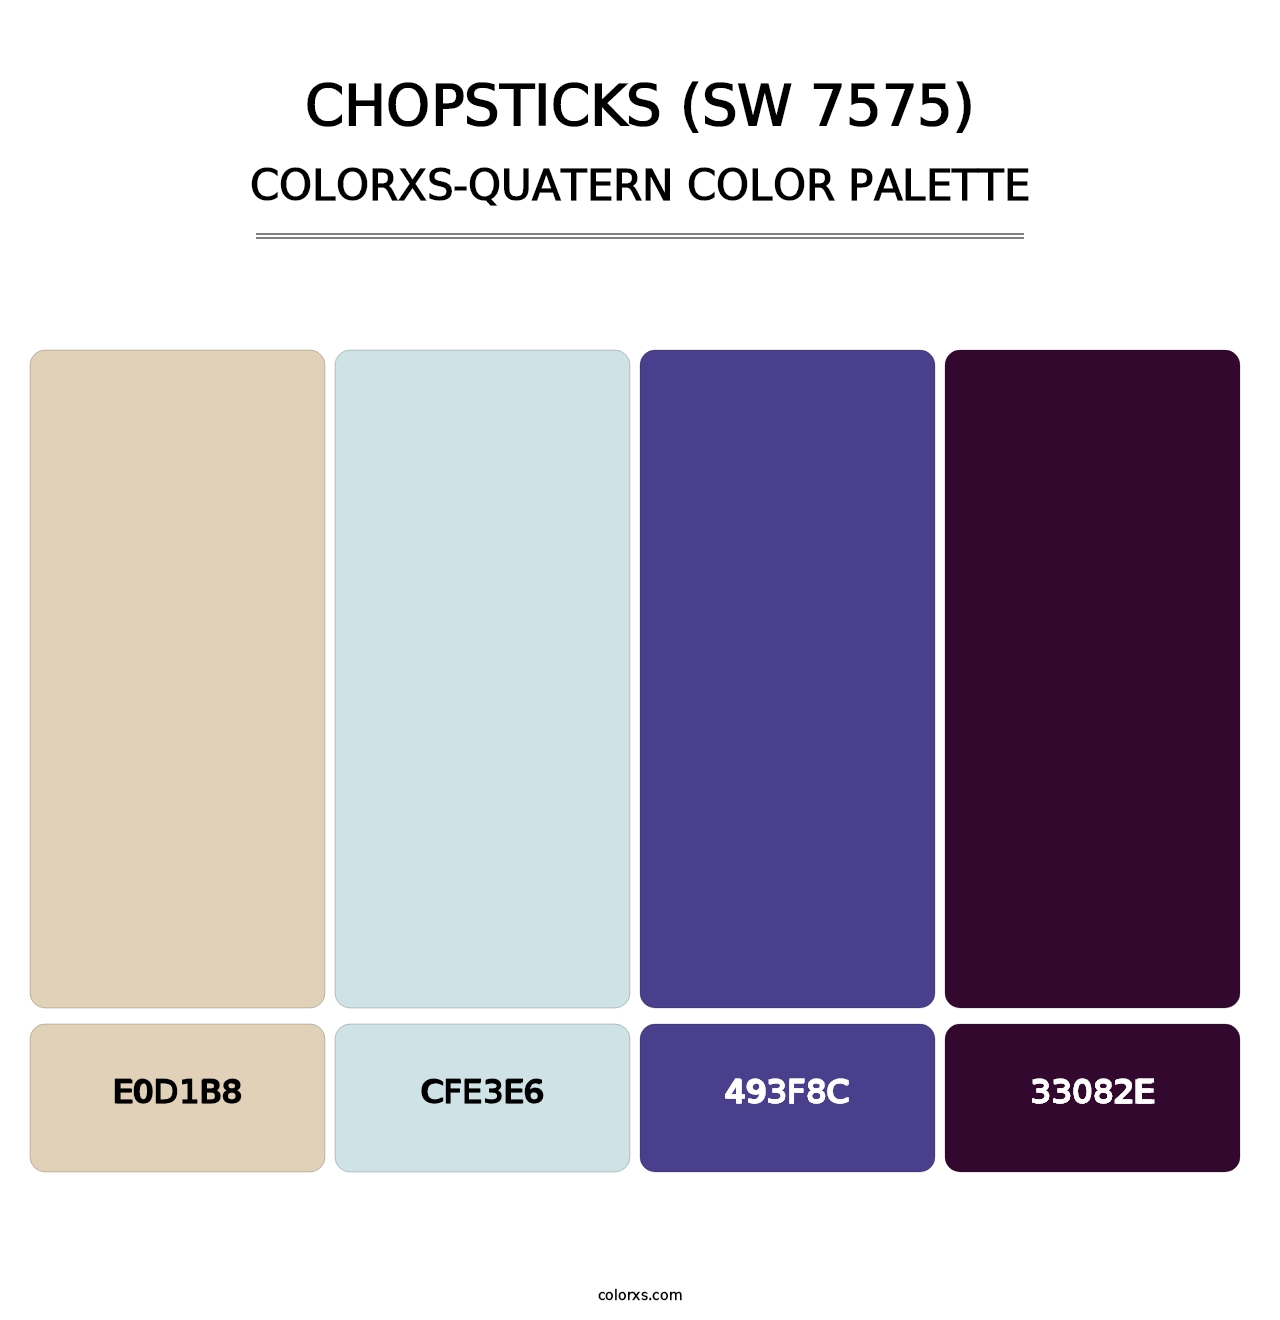 Chopsticks (SW 7575) - Colorxs Quatern Palette